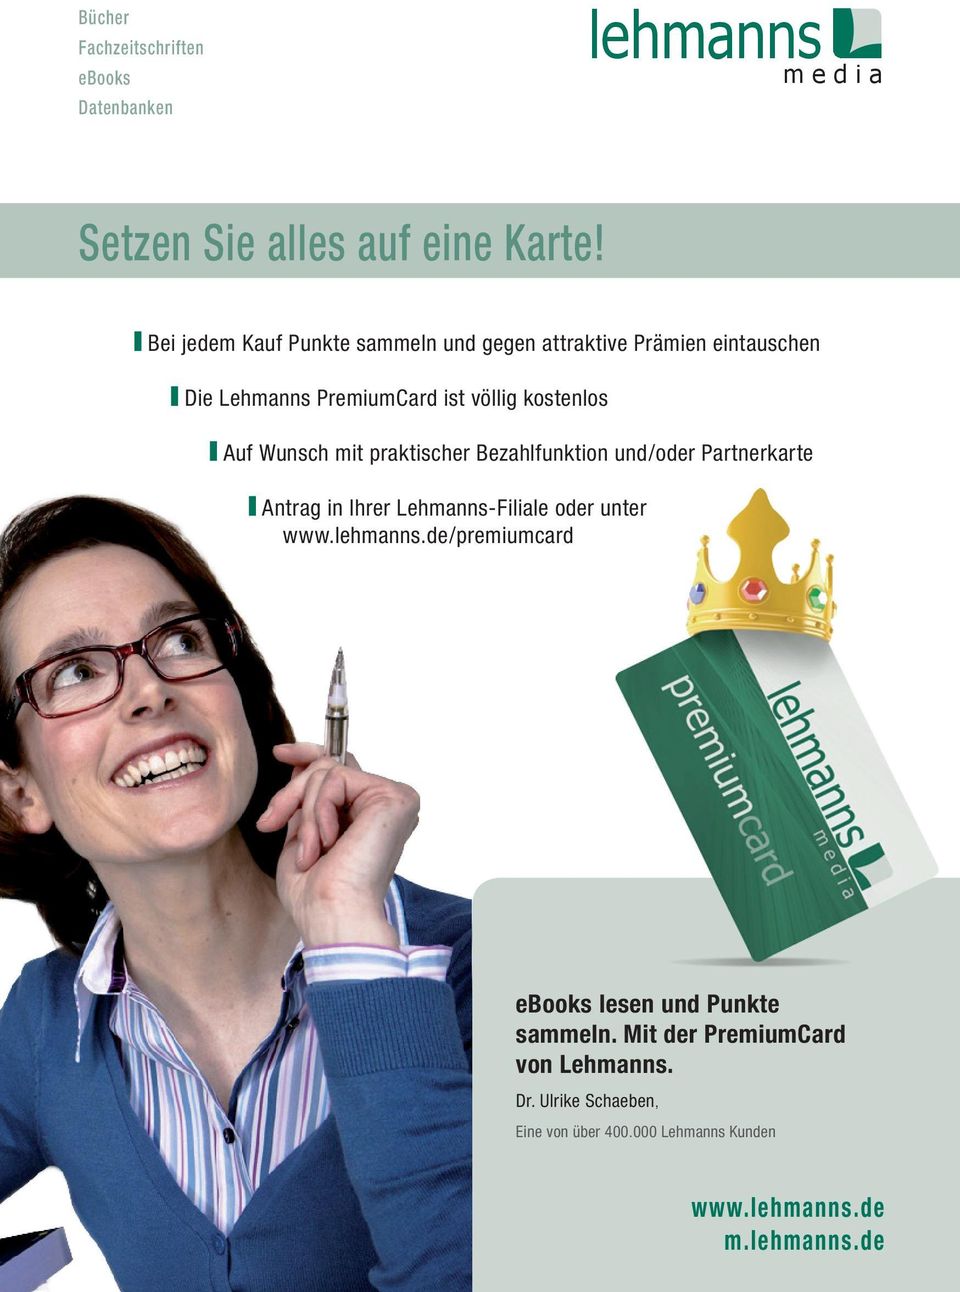 Auf Wunsch mit praktischer Bezahlfunktion und/oder Partnerkarte Antrag in Ihrer Lehmanns-Filiale oder unter www.lehmanns.